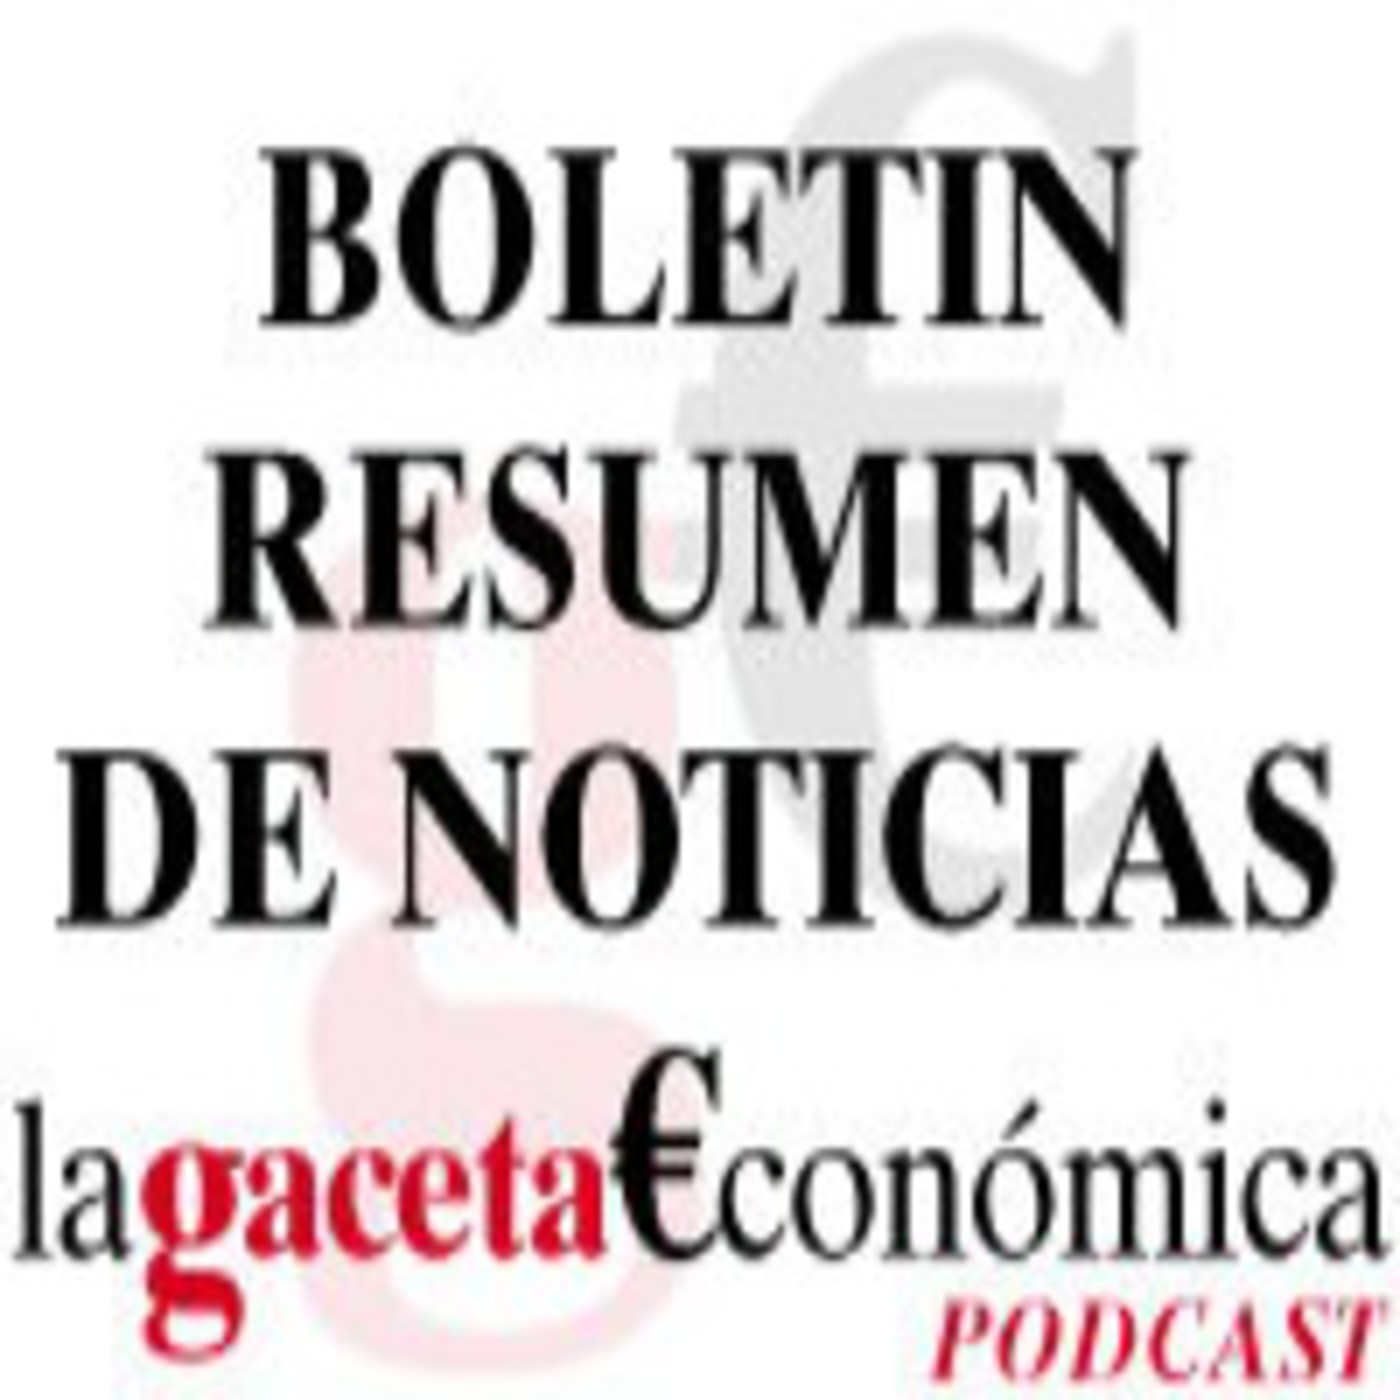 Boletin Noticias 26 abril 2011 La Gaceta Económica de Almería